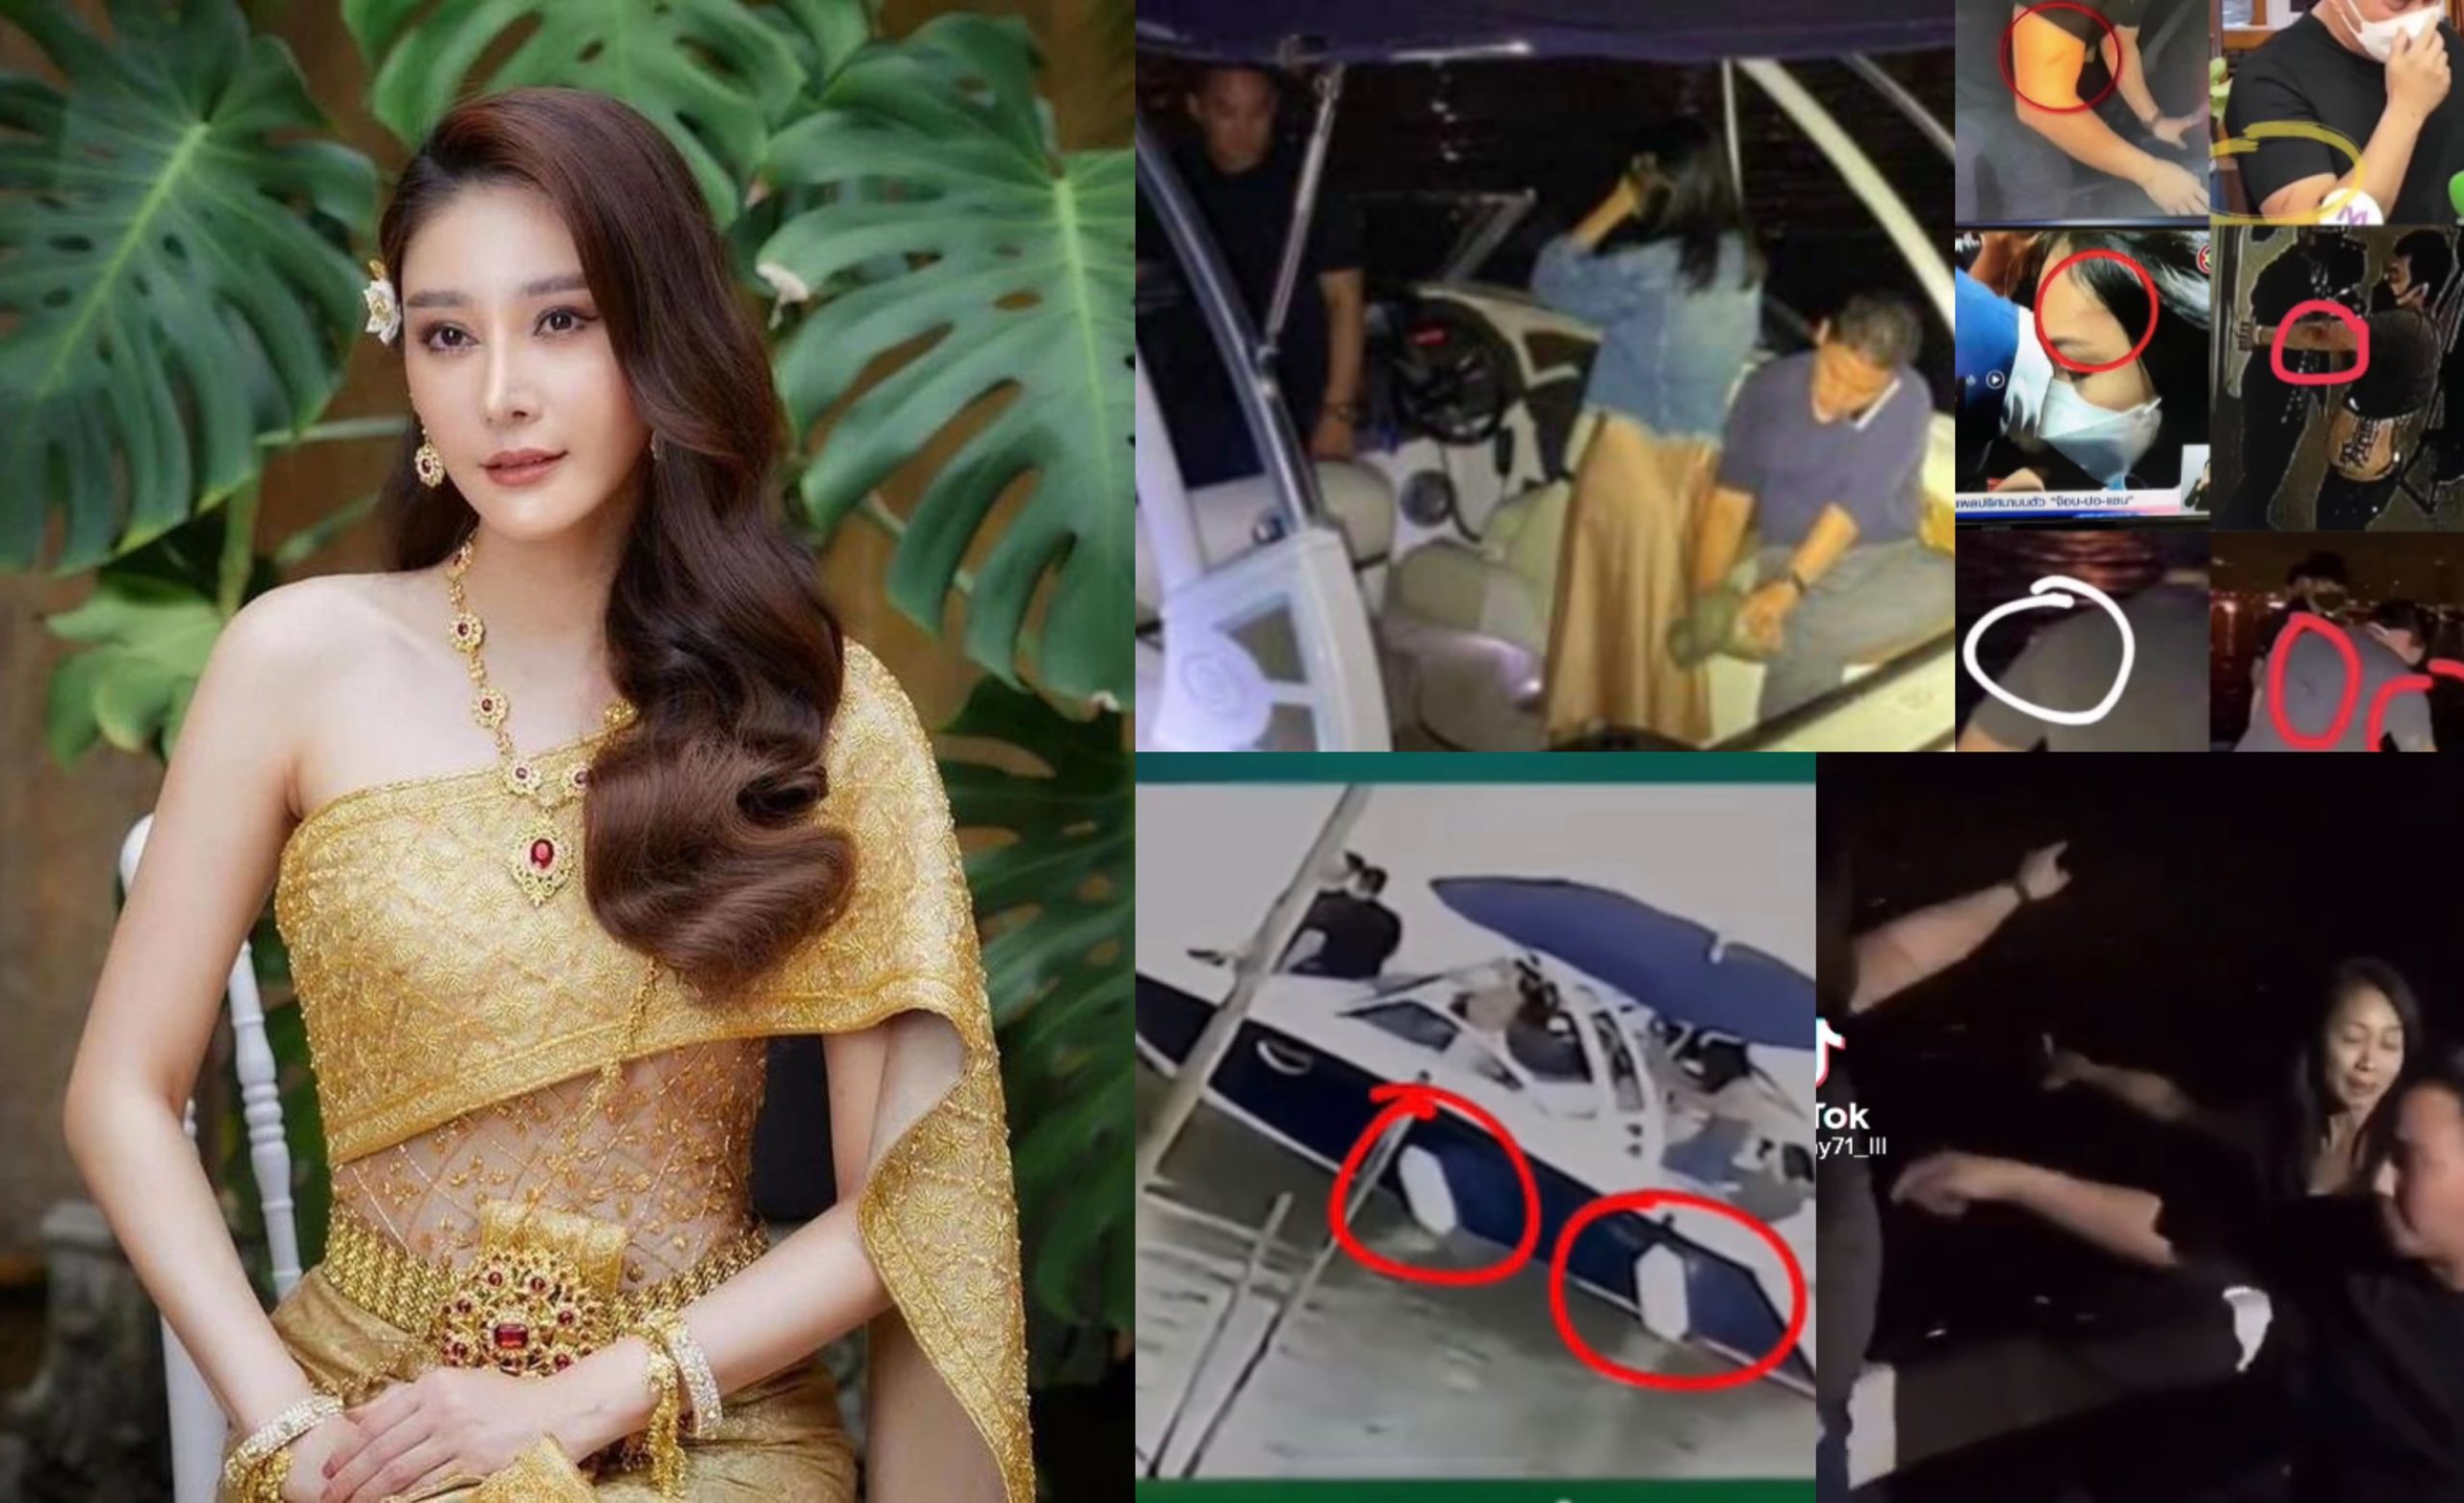 Rakaman CCTV Tersebar, Netizen Syak Kematian Pelakon Thailand Dirancang, Gambar IG Dipadam, Baju ‘Saksi’ Koyak & Badan Luka